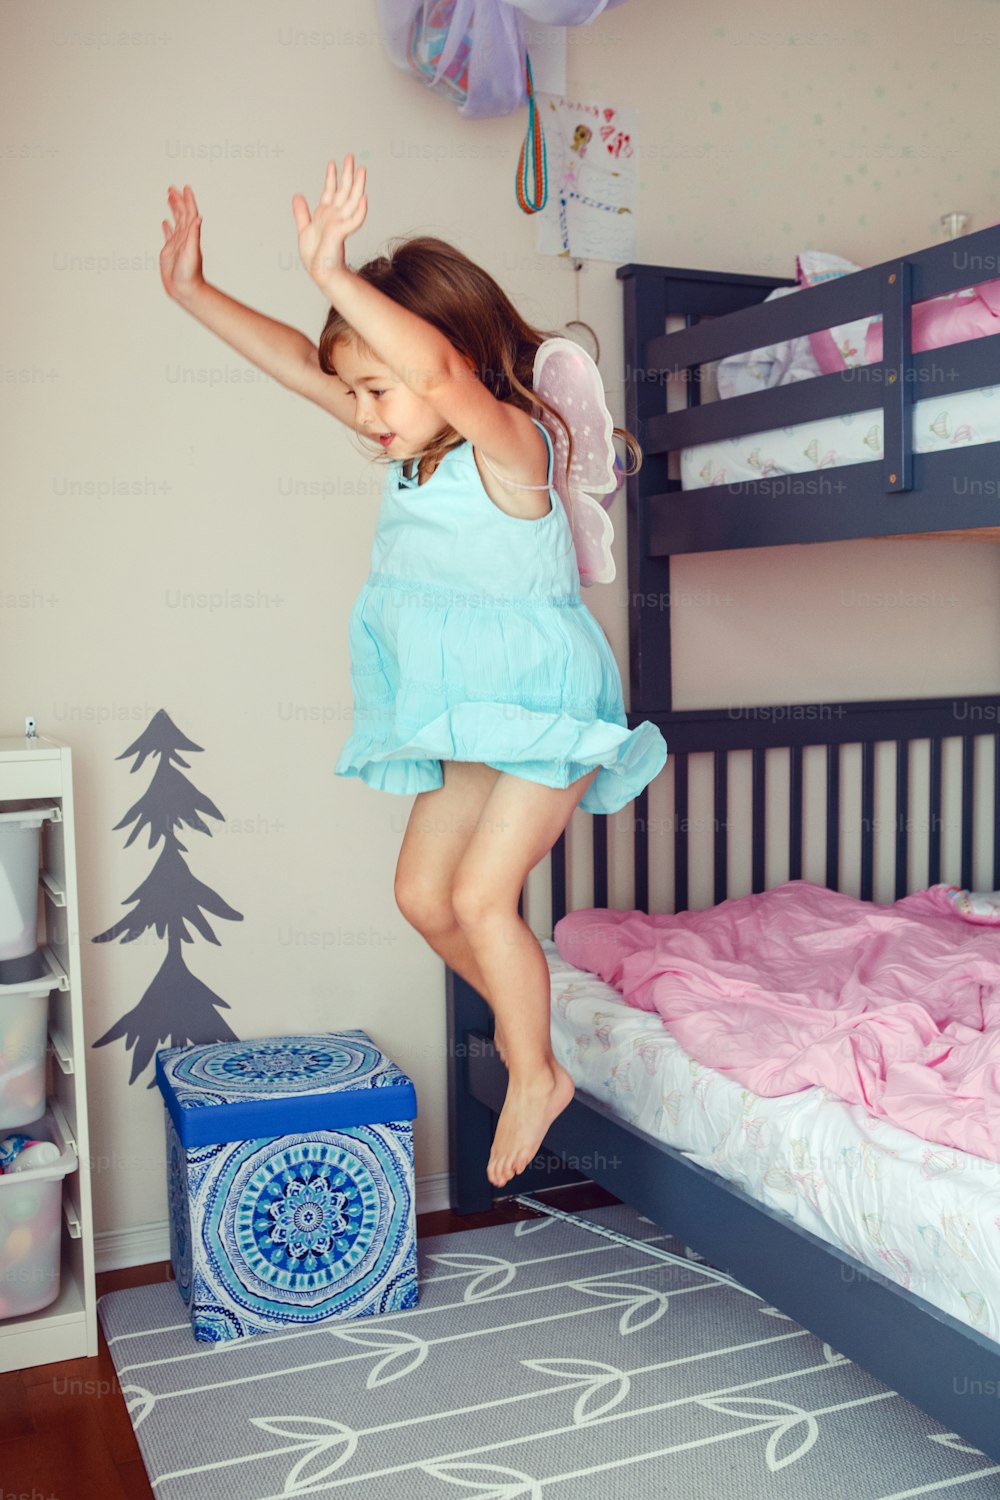 Jolie fille caucasienne sautant du lit. Enfant heureux et excité qui s’amuse à la maison. Adorable enfant jouant à un jeu volant comme un elfe ou une fée. Action authentique, style de vie candide, moment de la vie domestique.